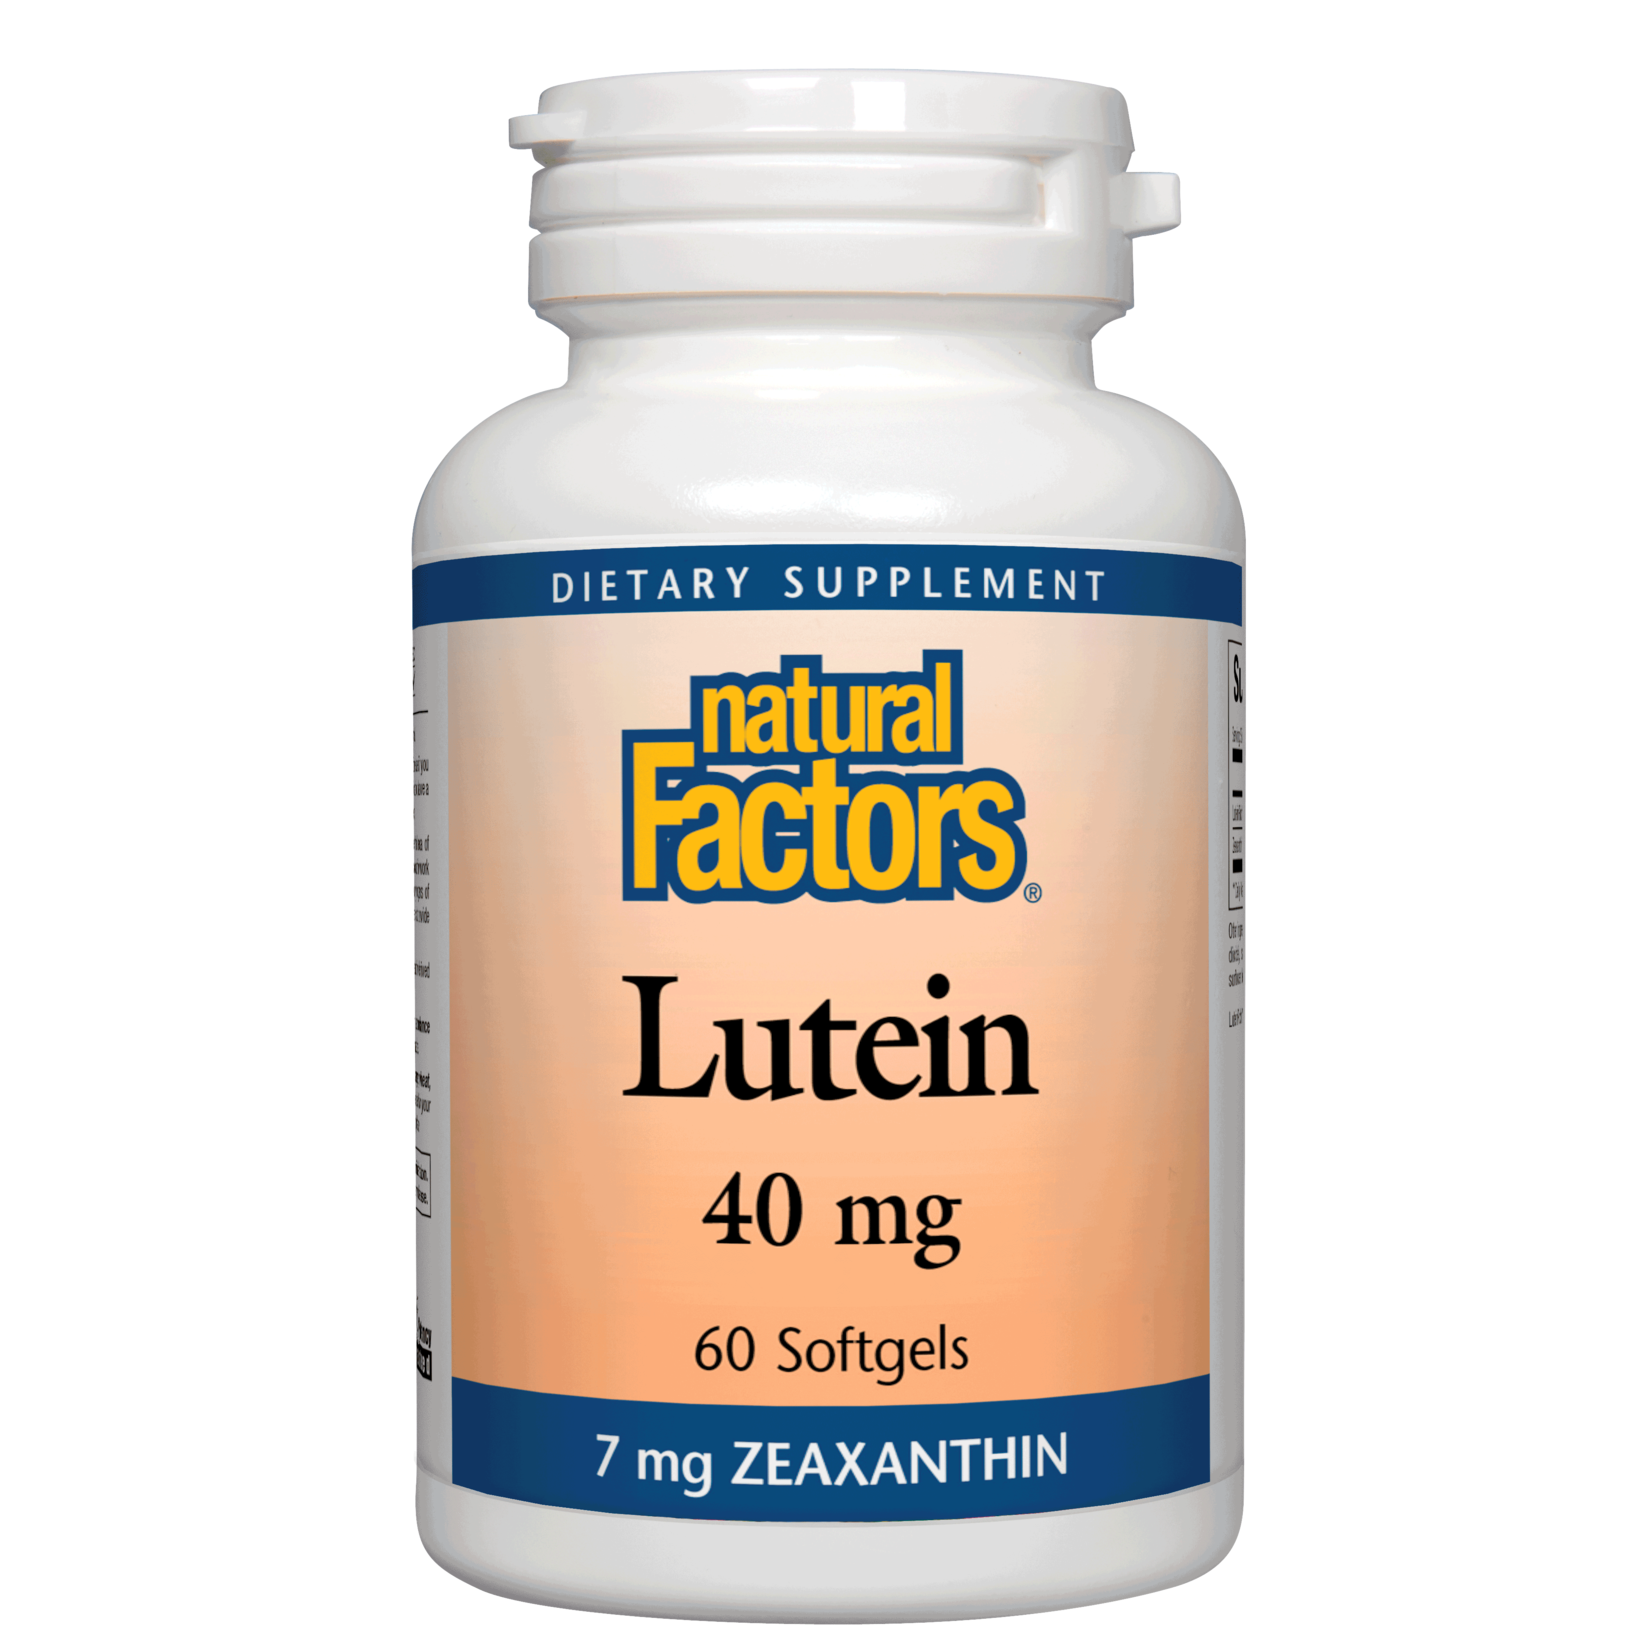 Natural Factors Natural Factors - Lutein 40 mg - 60 Softgels